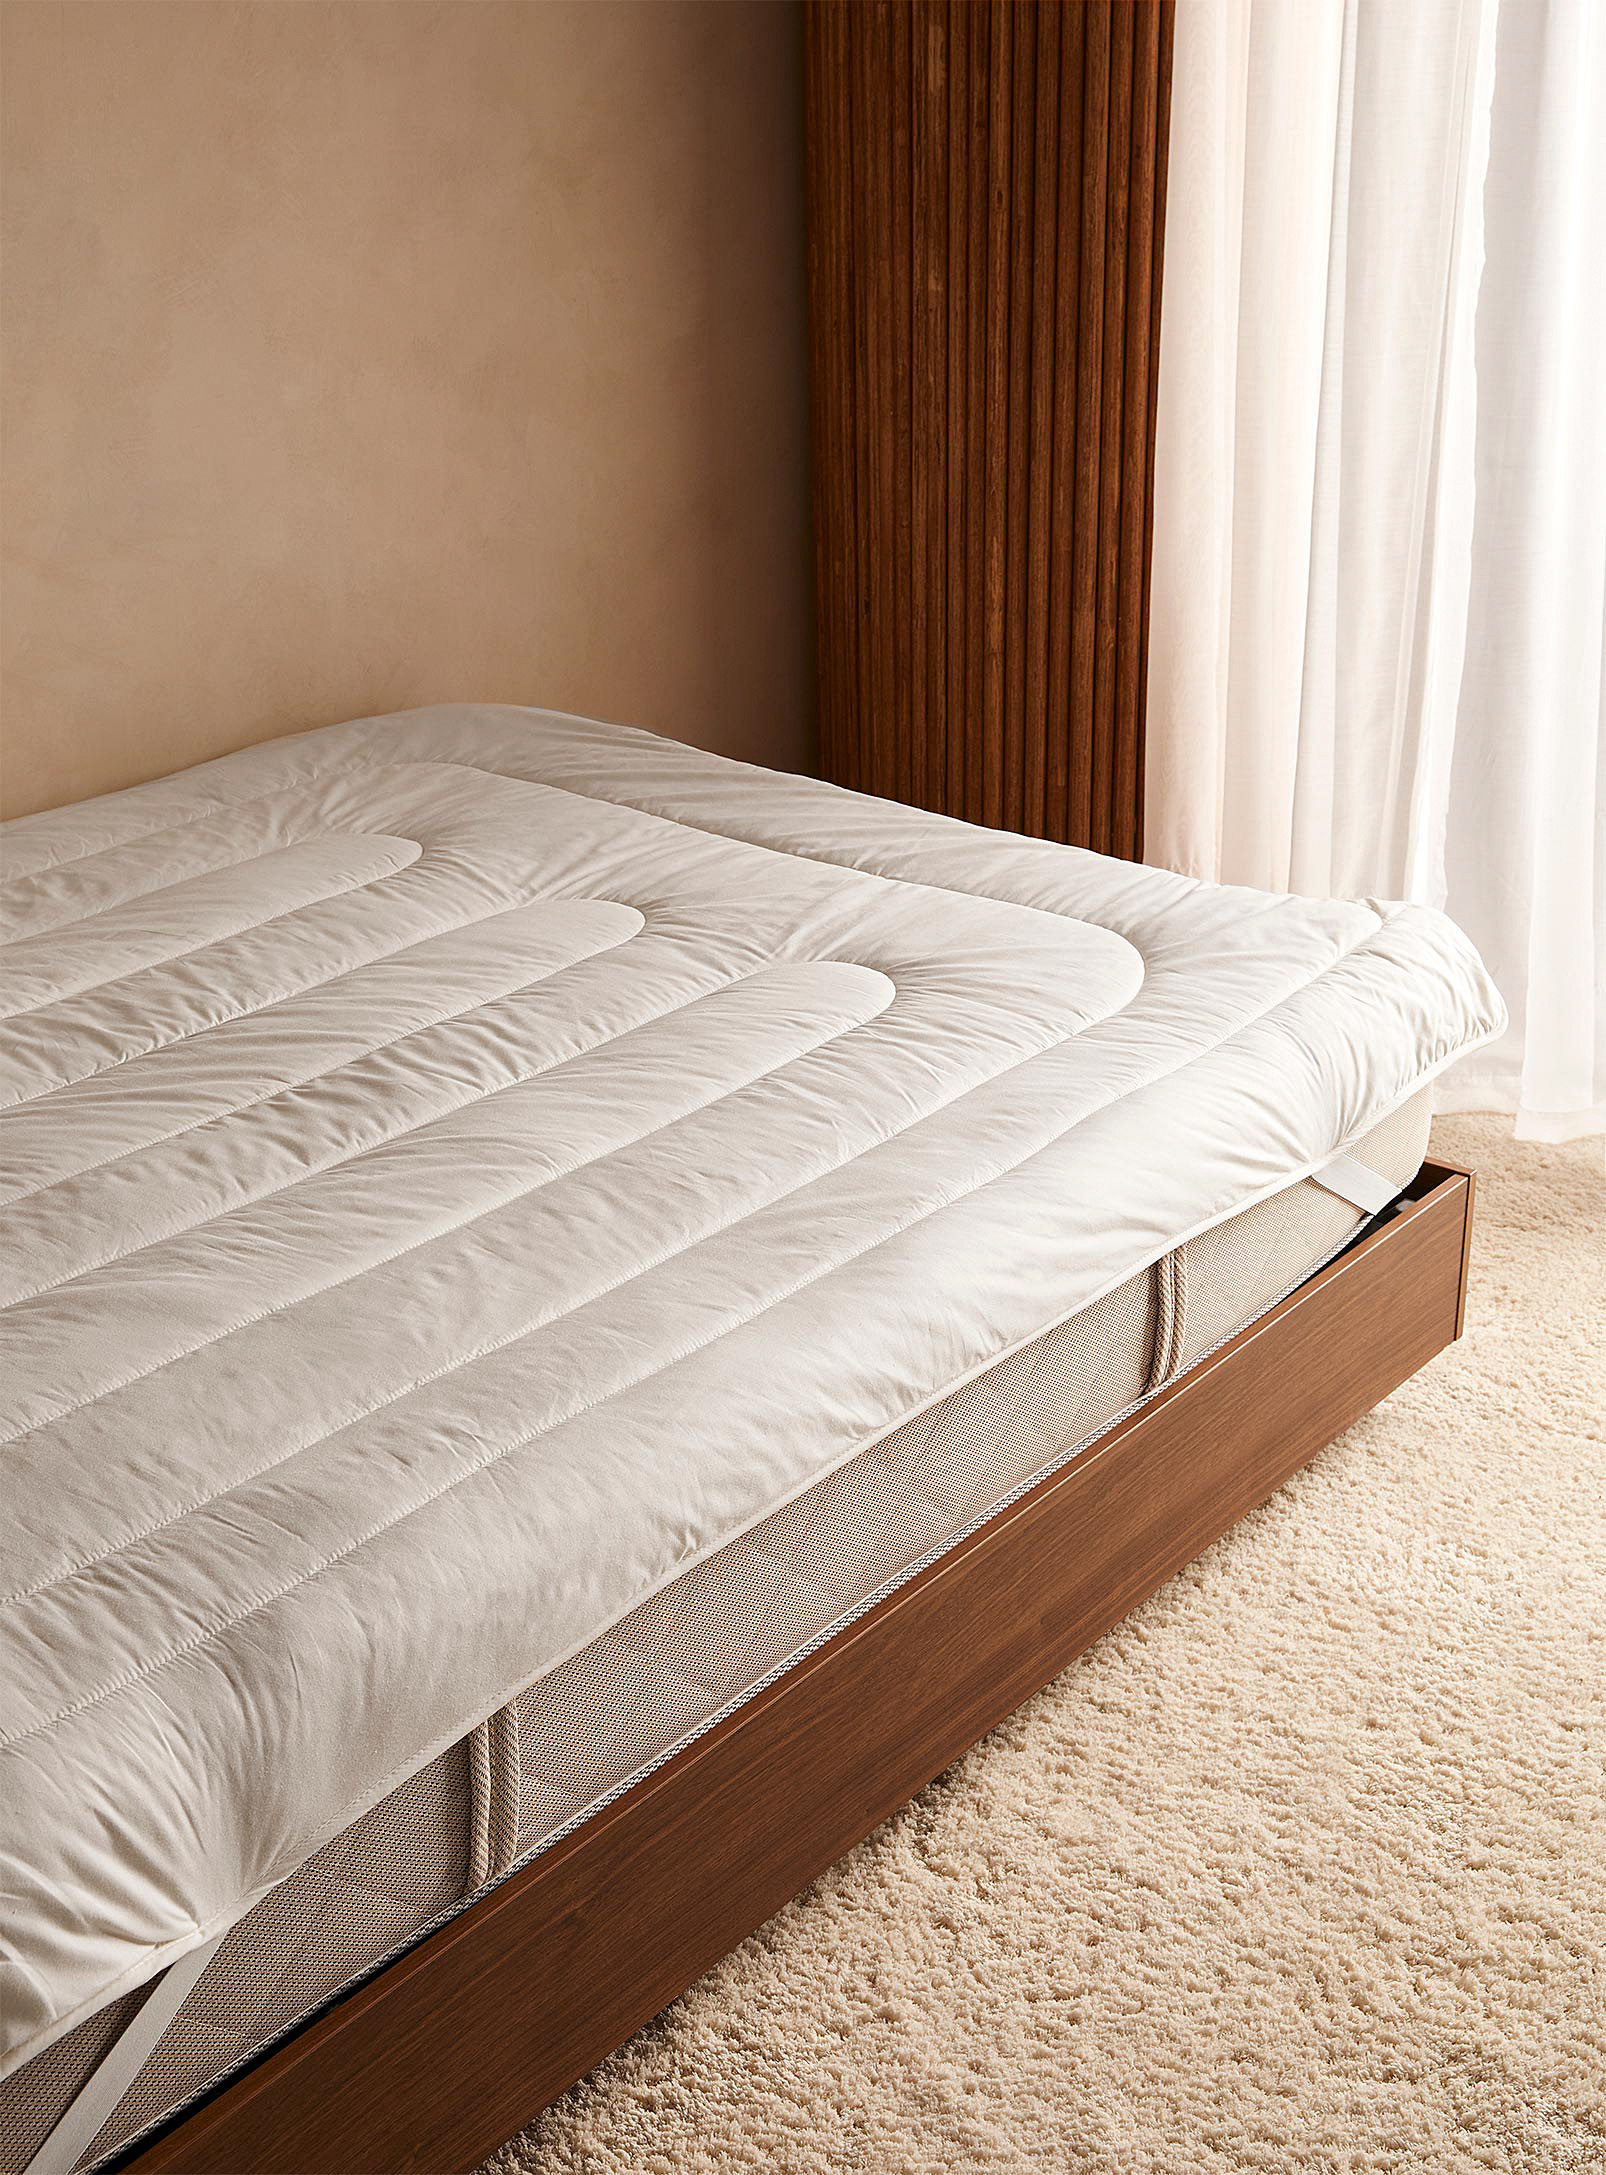 SnugSleep - Washable wool mattress protector